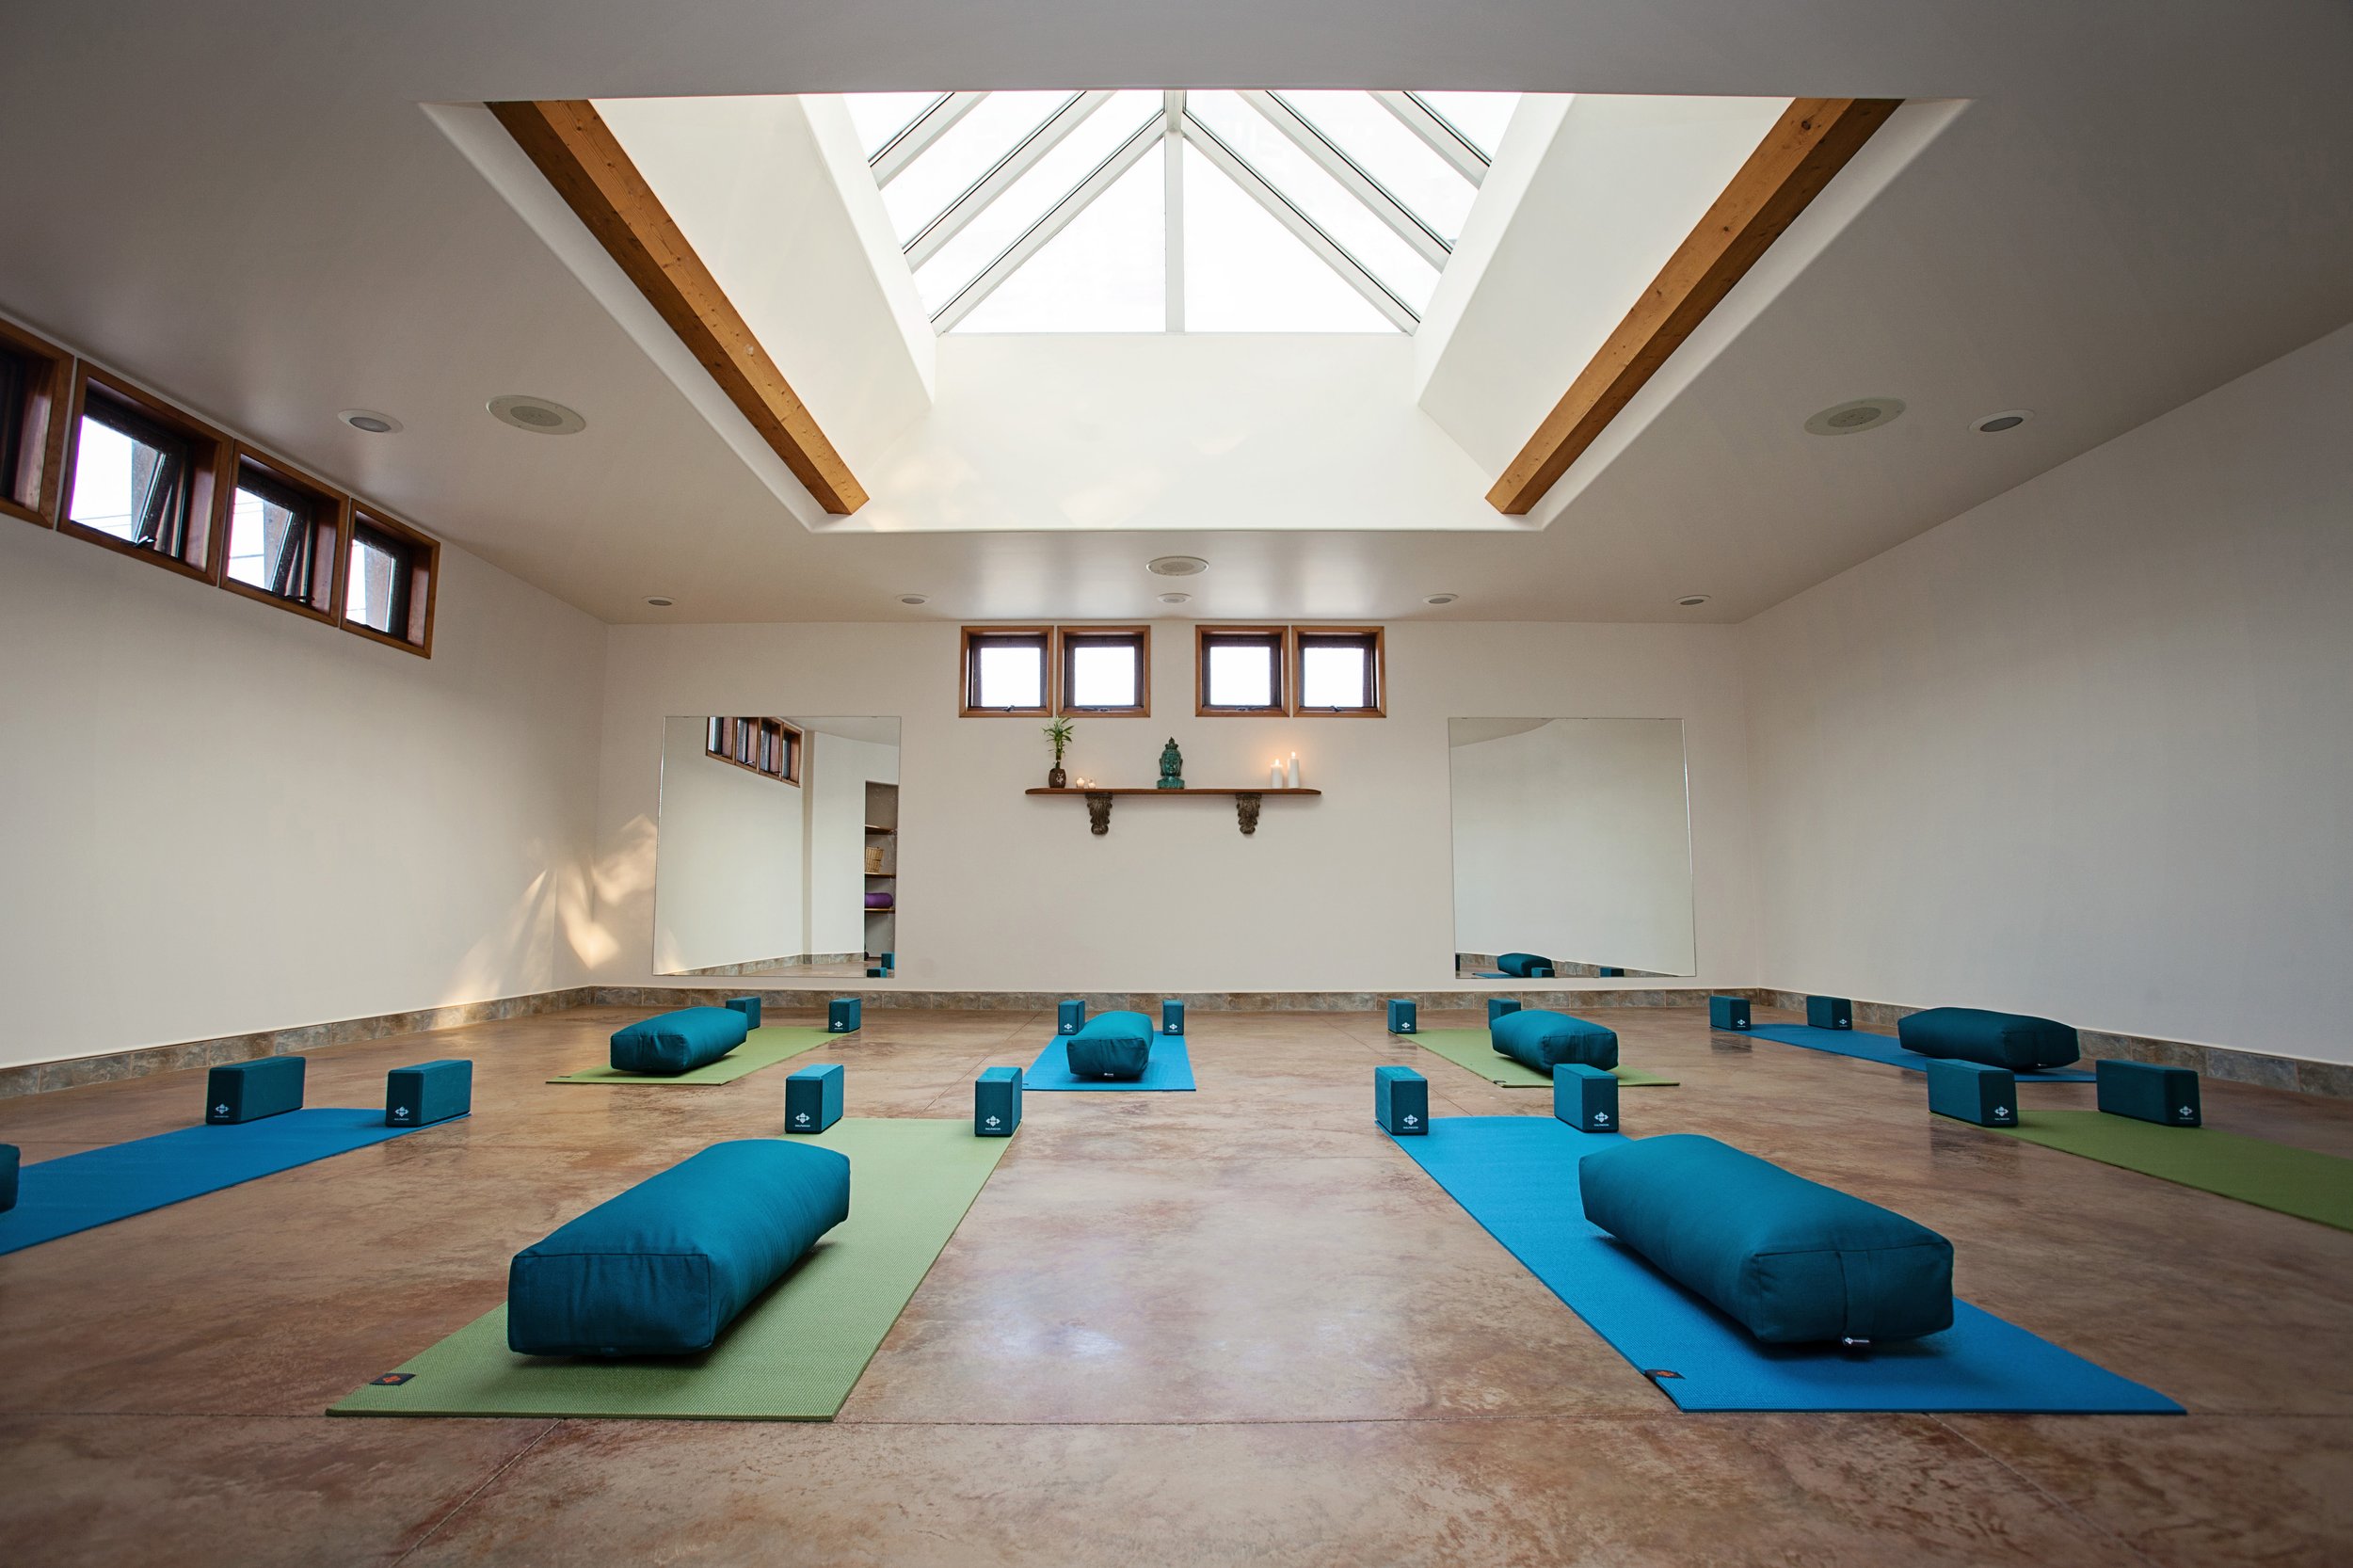 Group Meditating In Yoga Studio by Stocksy Contributor Milles Studio -  Stocksy